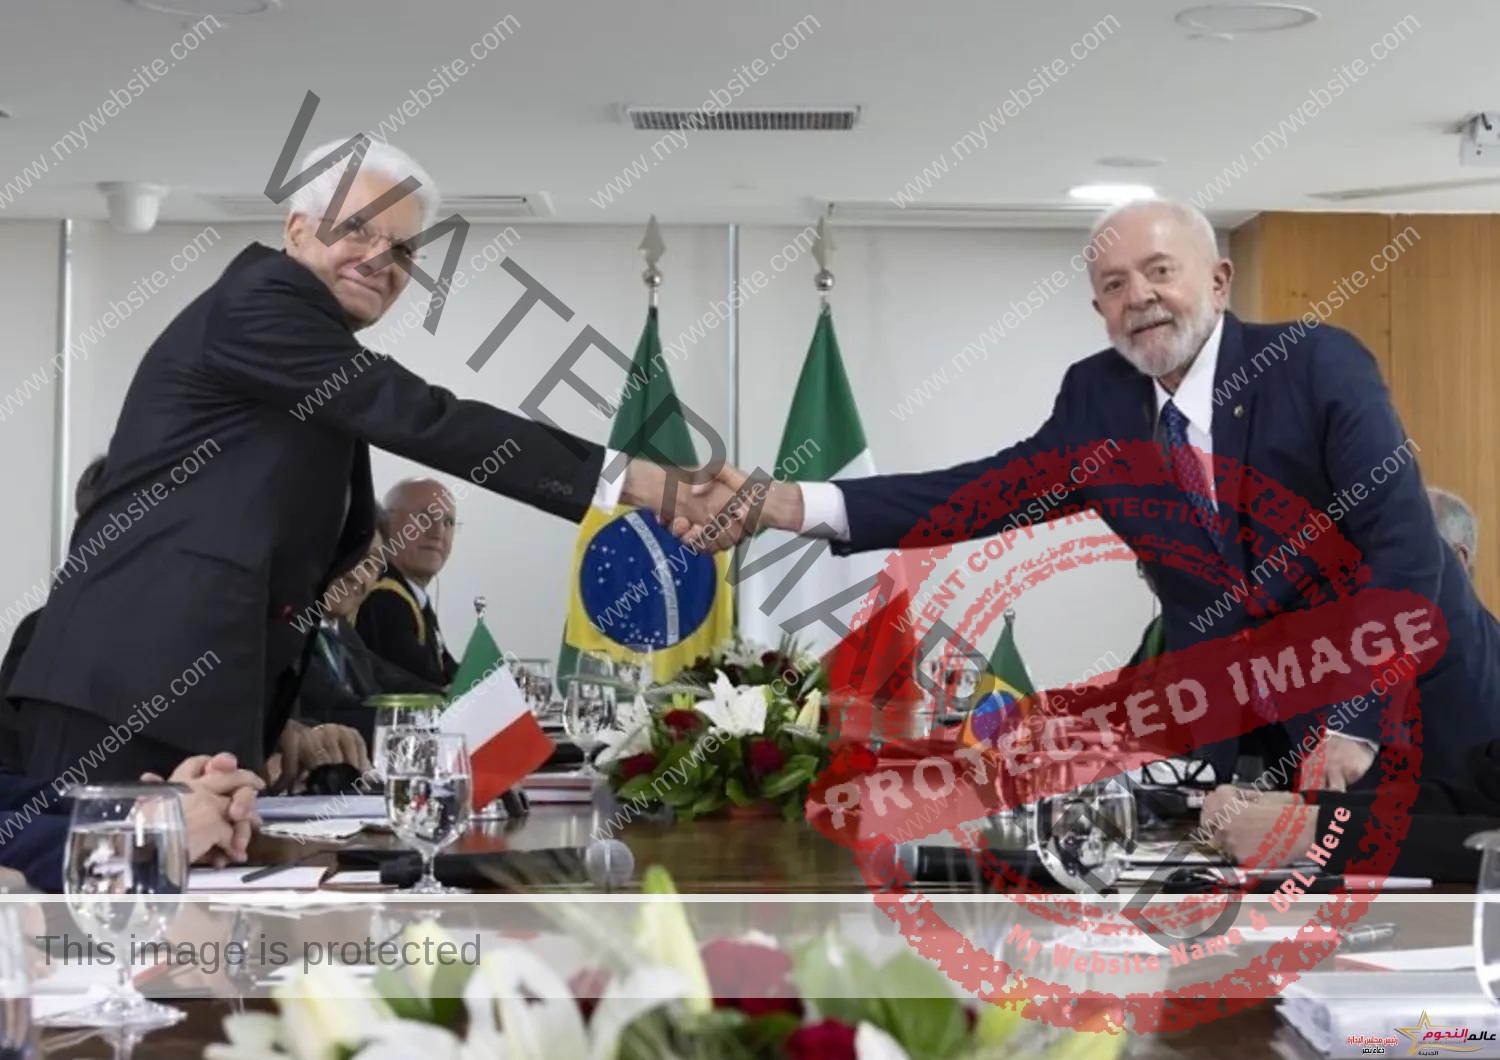 إيطاليا والبرازيل تتحدان ضد الجوع والفقر